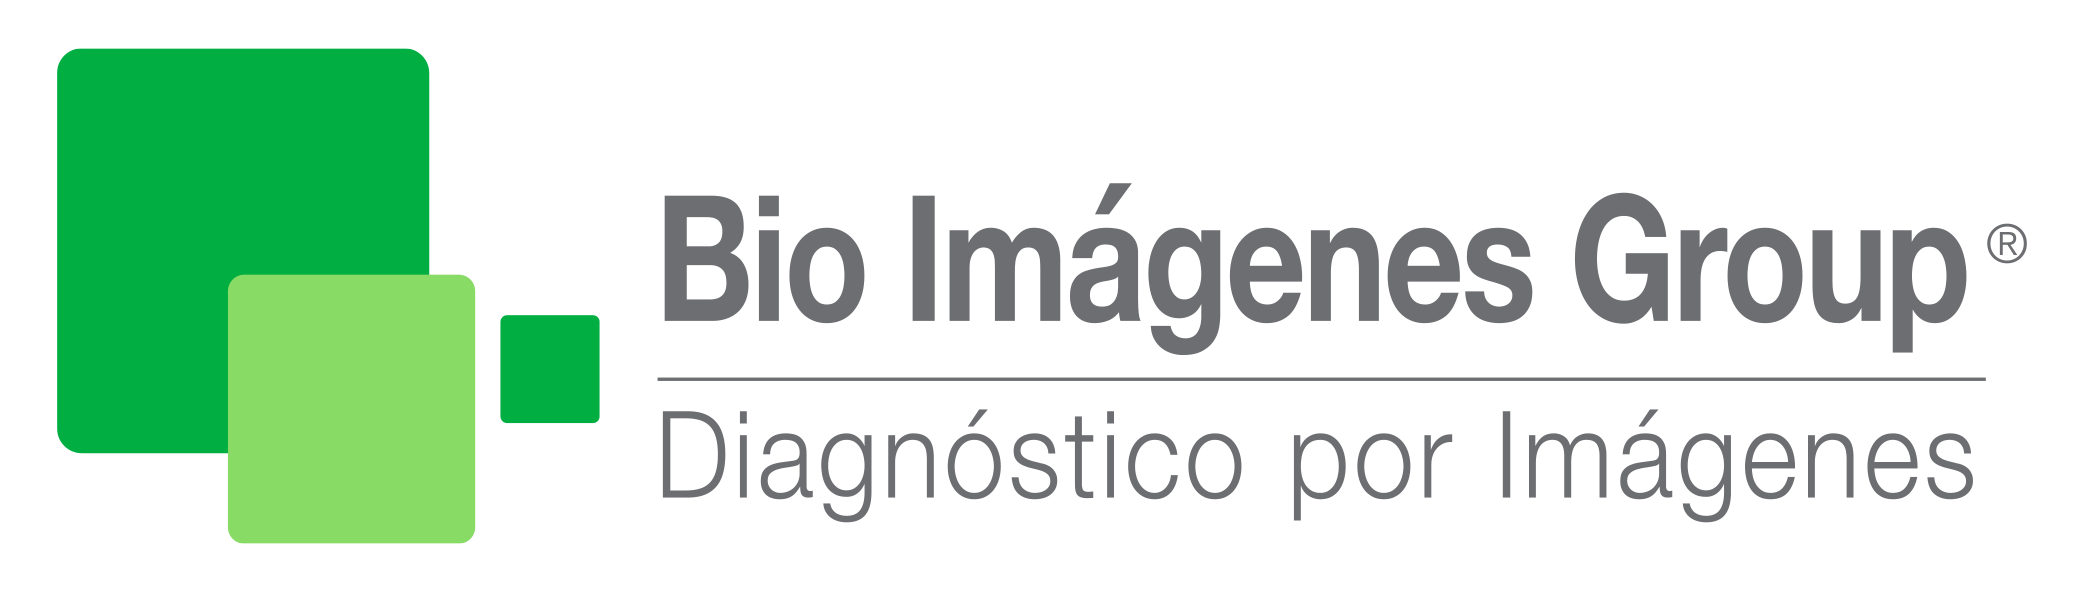 Bio-Imagenes Group – Servicio de Diagnóstico por Imágenes